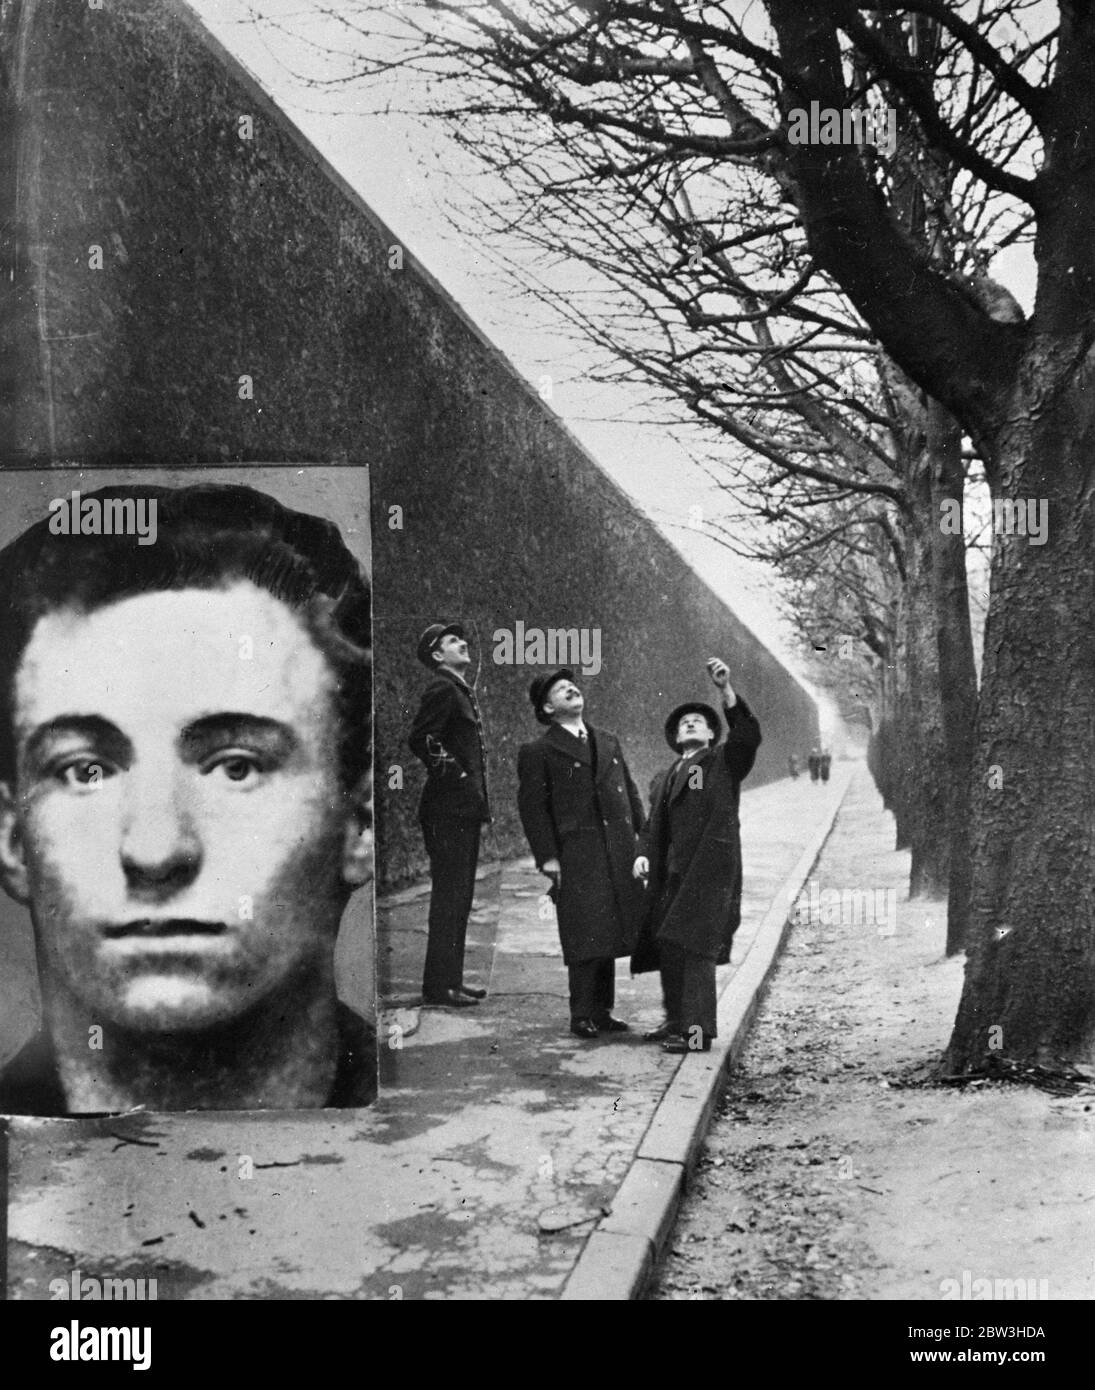 Zweiter Mann in der Geschichte, um aus dem Gefängnis Sante zu entkommen. Polizisten zeigen auf den Baum, von dem ein Seil zu Armand Spilers geworfen wurde, so dass er die Gefängnismauer erklaren konnte (links). Im Set ist der entflohene Sträfling. 21 März 1935 Stockfoto